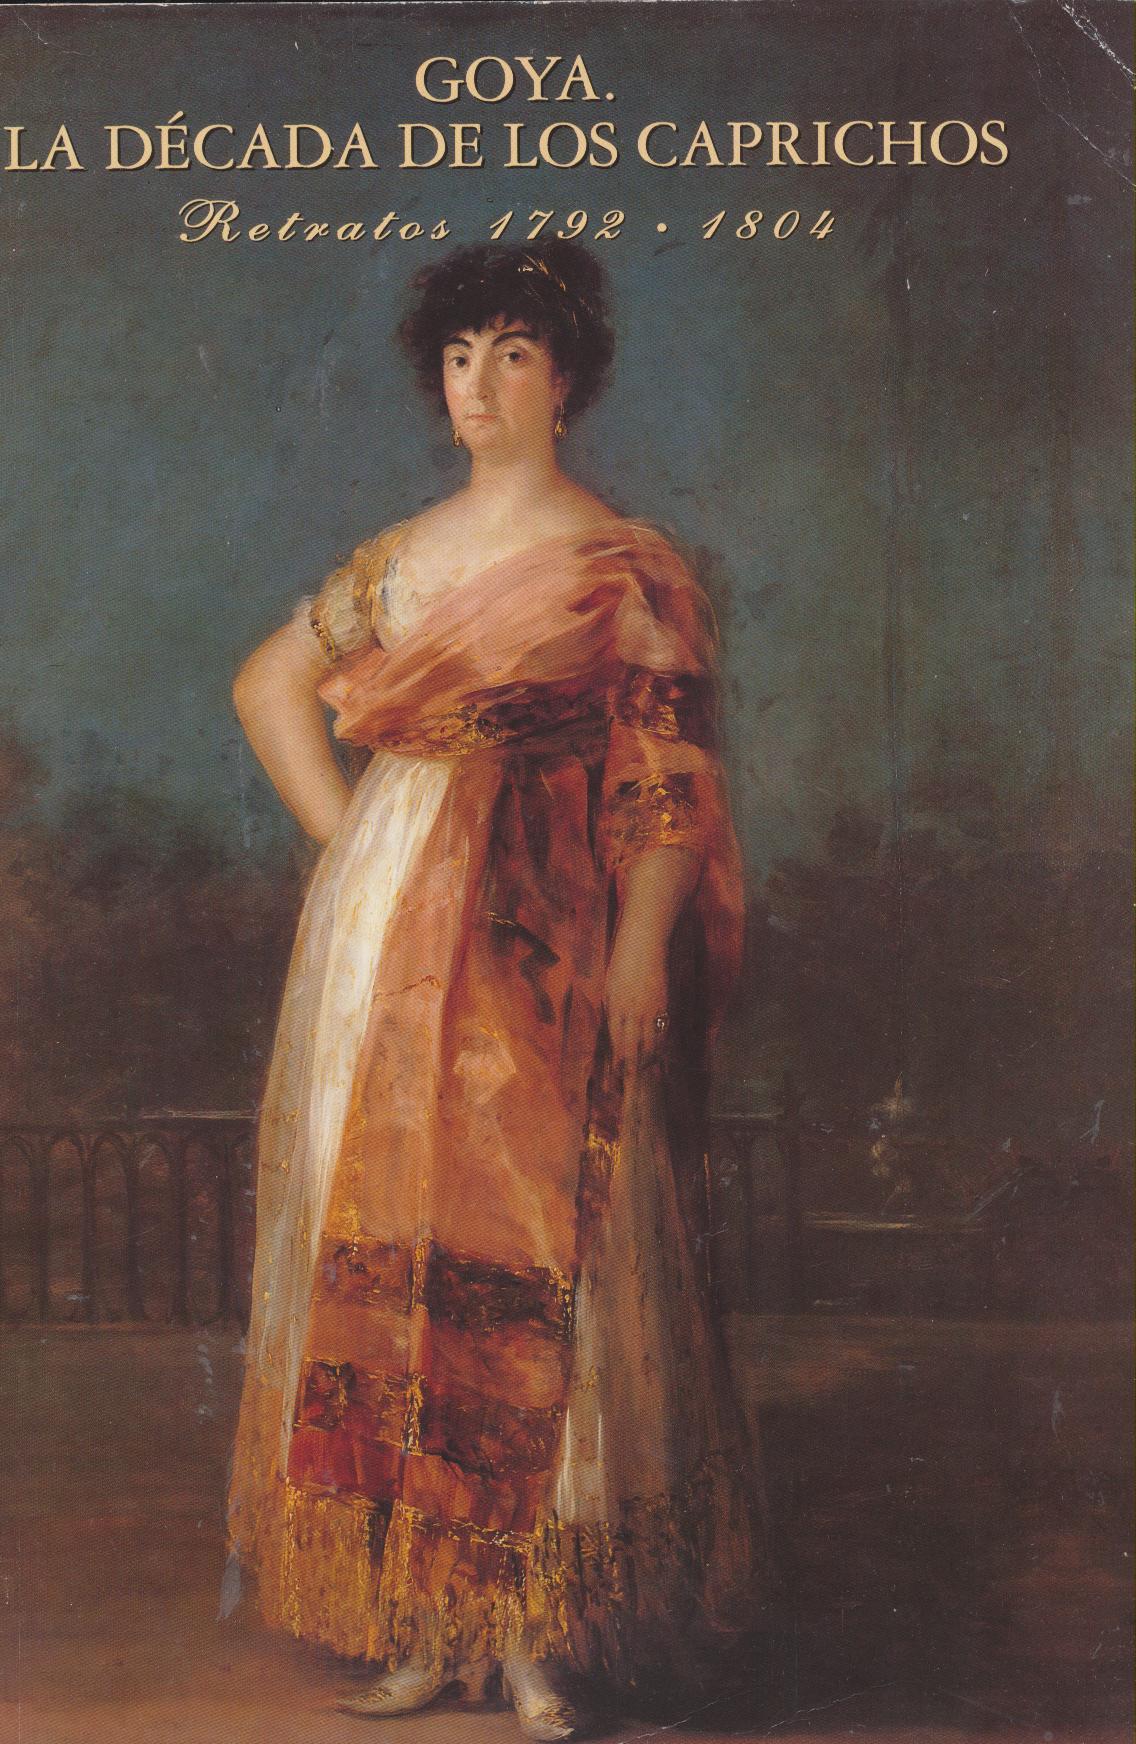 Goya. La Década de los caprichos. Retratos 1792-1804. Fundación Central-Hispano 1992